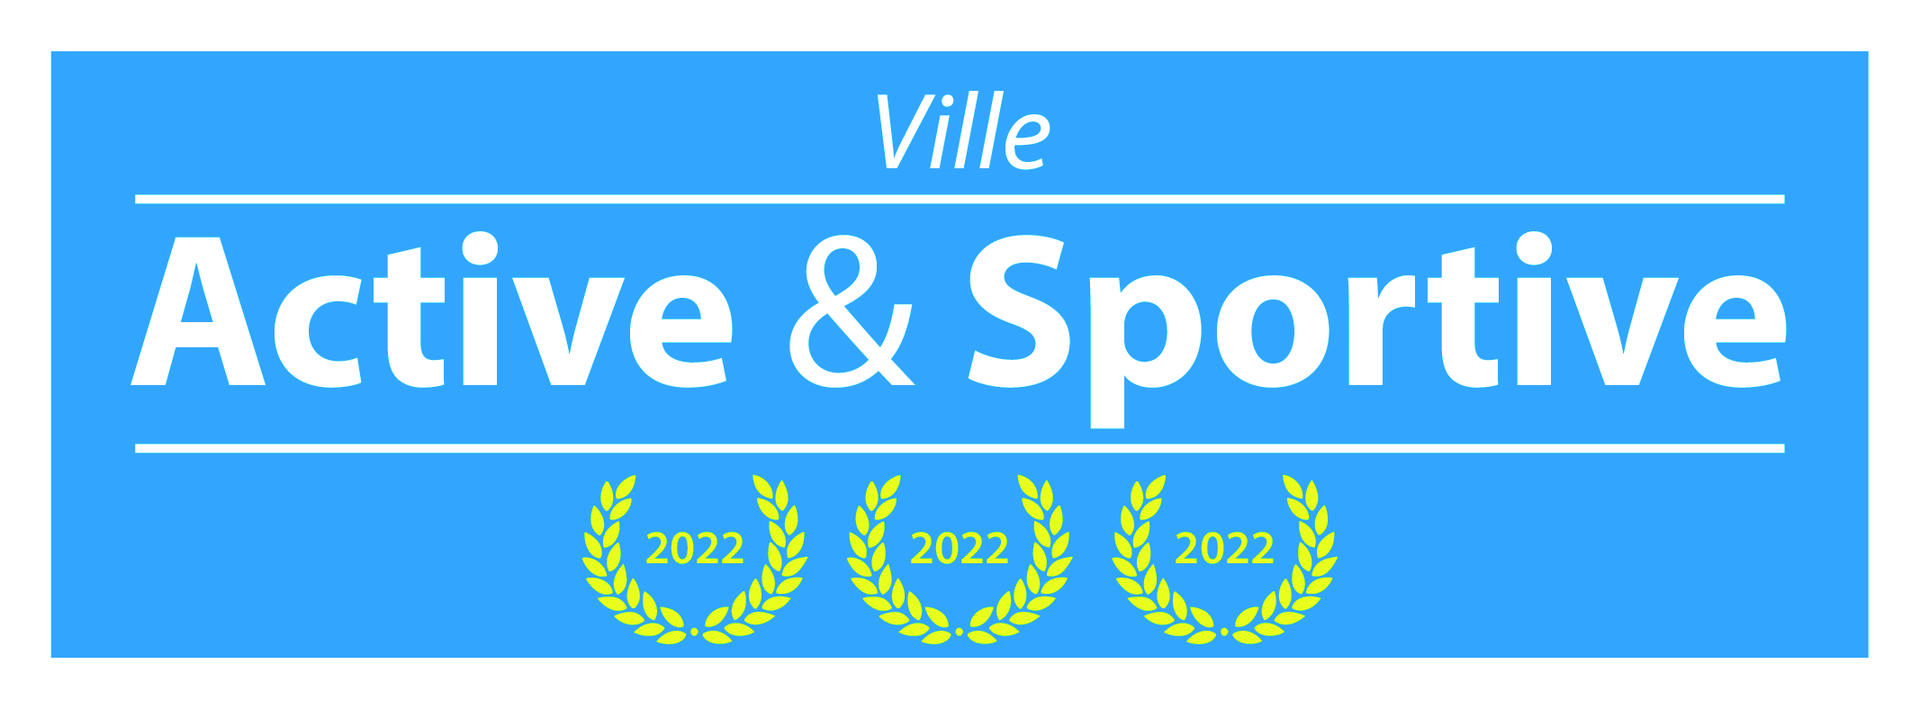 Label Ville Active et Sportive 3 lauriers